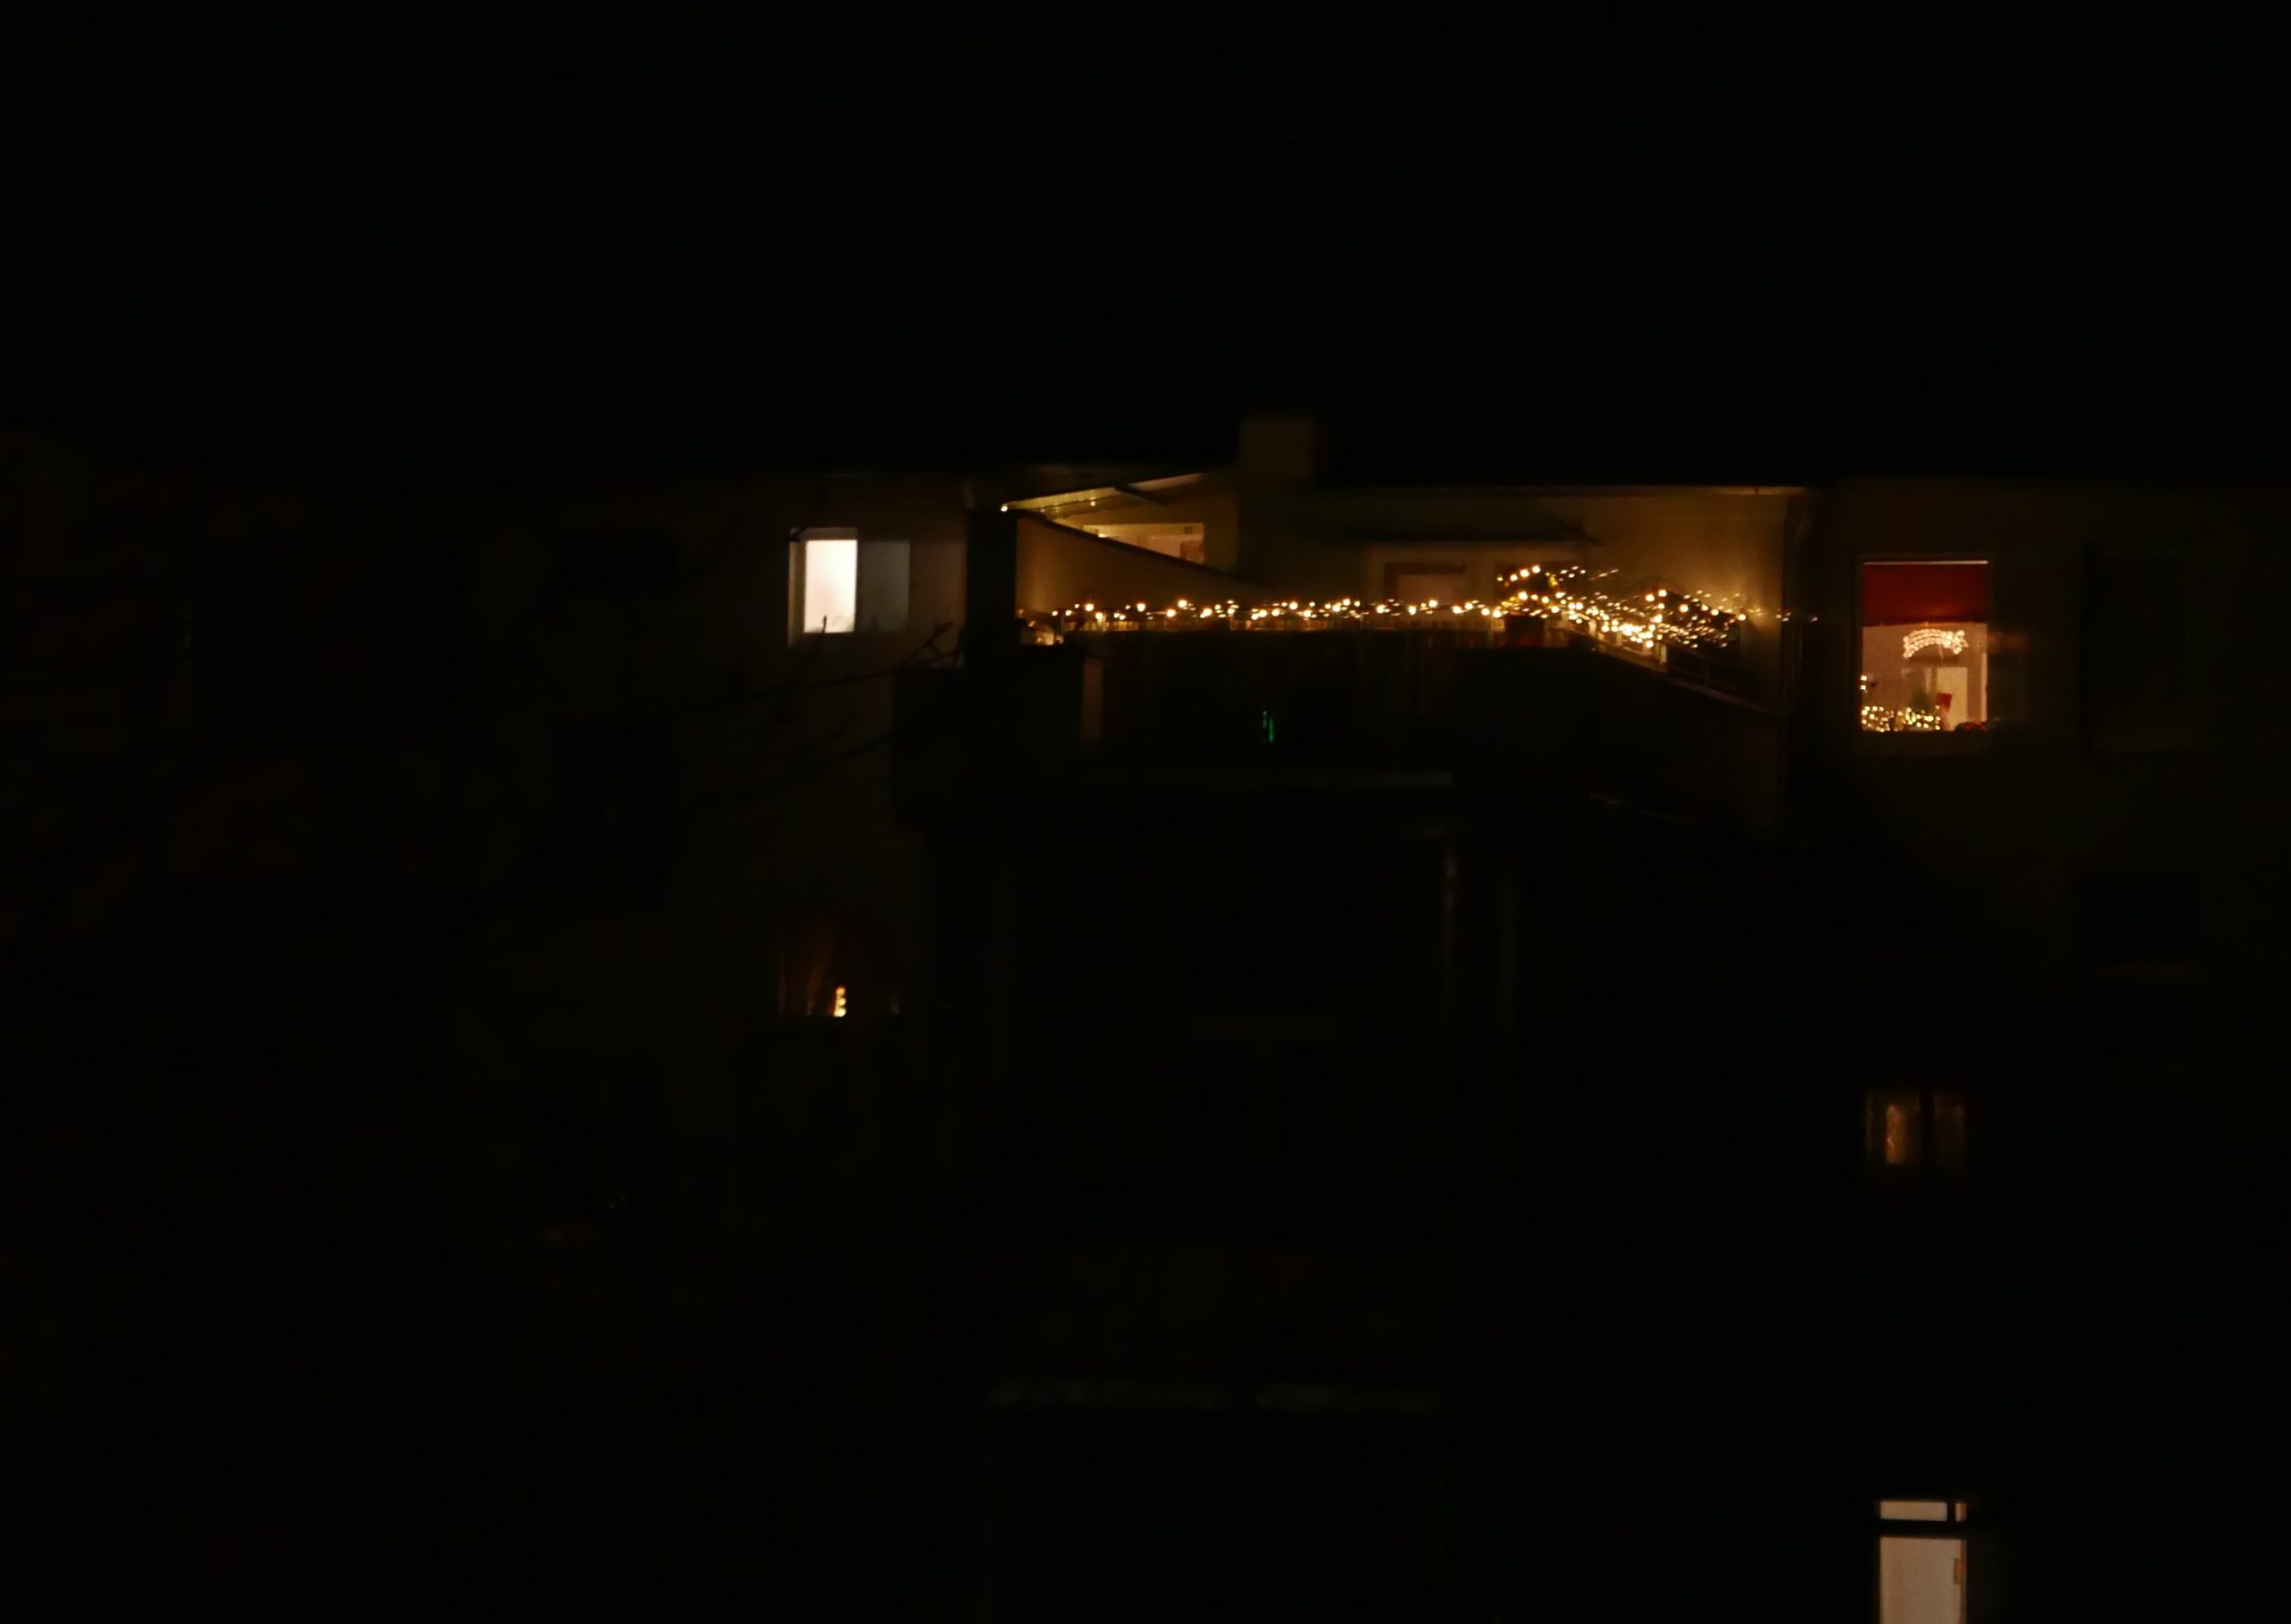 Lichterketten weihnachtlich in der Dunkelheit zwischen Fenstern